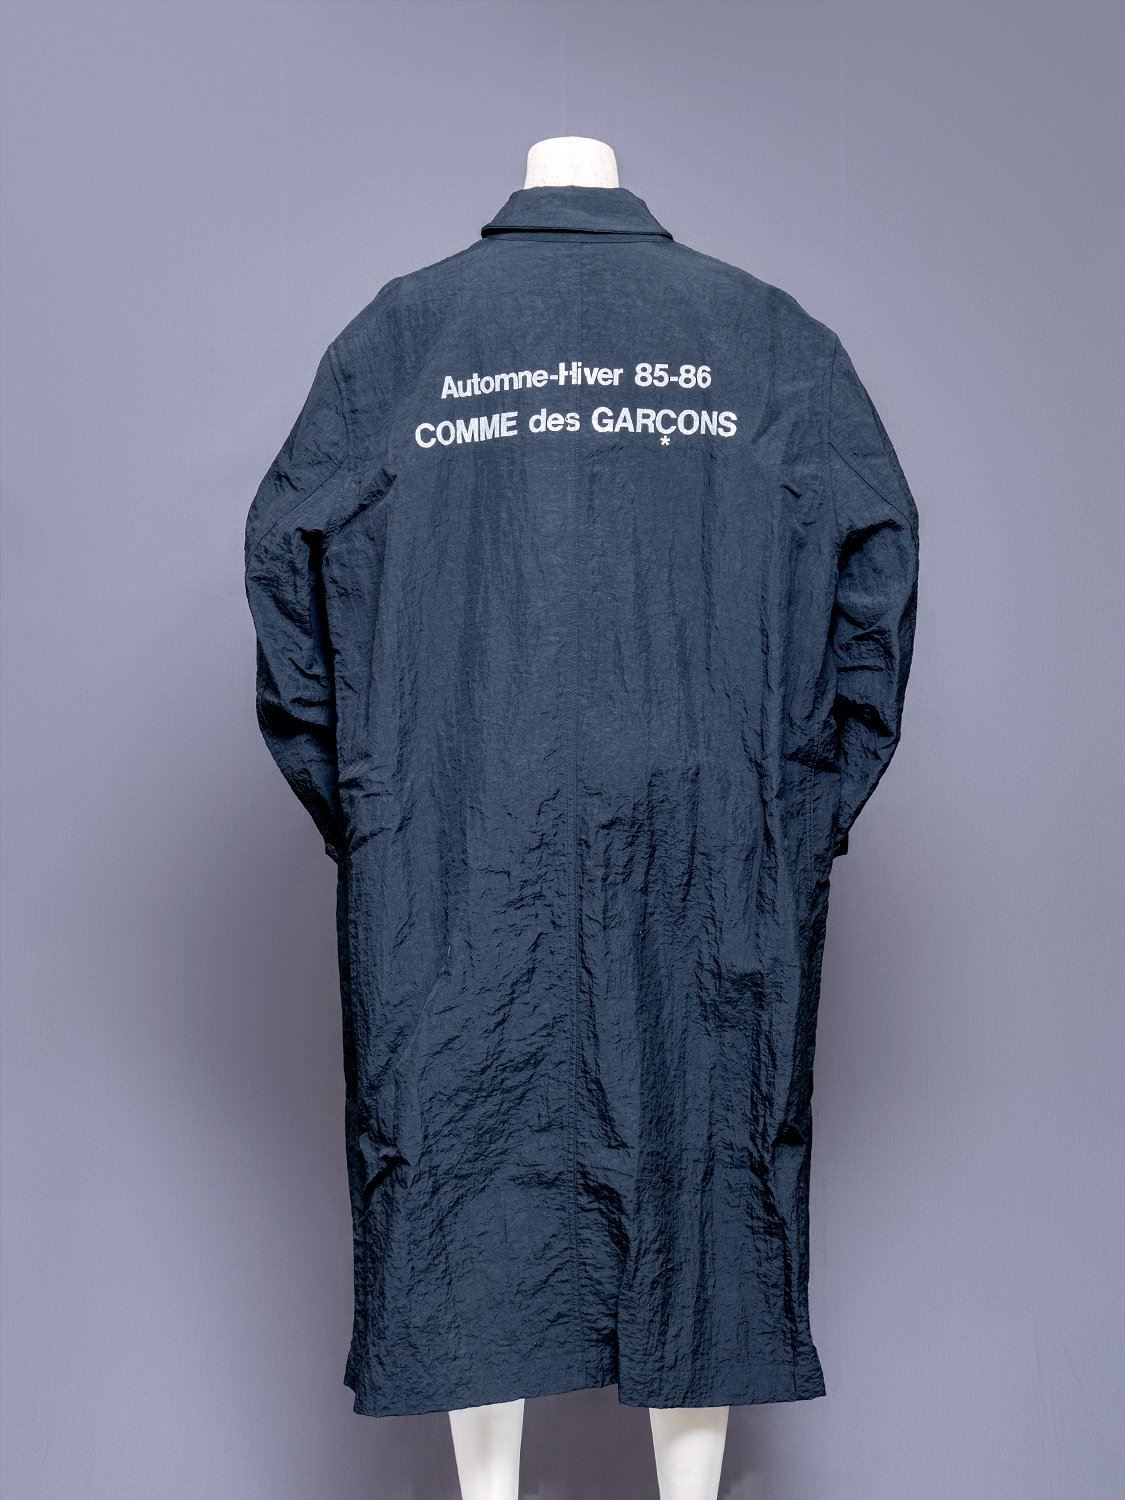 Comme Des Garcons Automne-Hiver 1985-1986 Staff Coat | Japanese ...